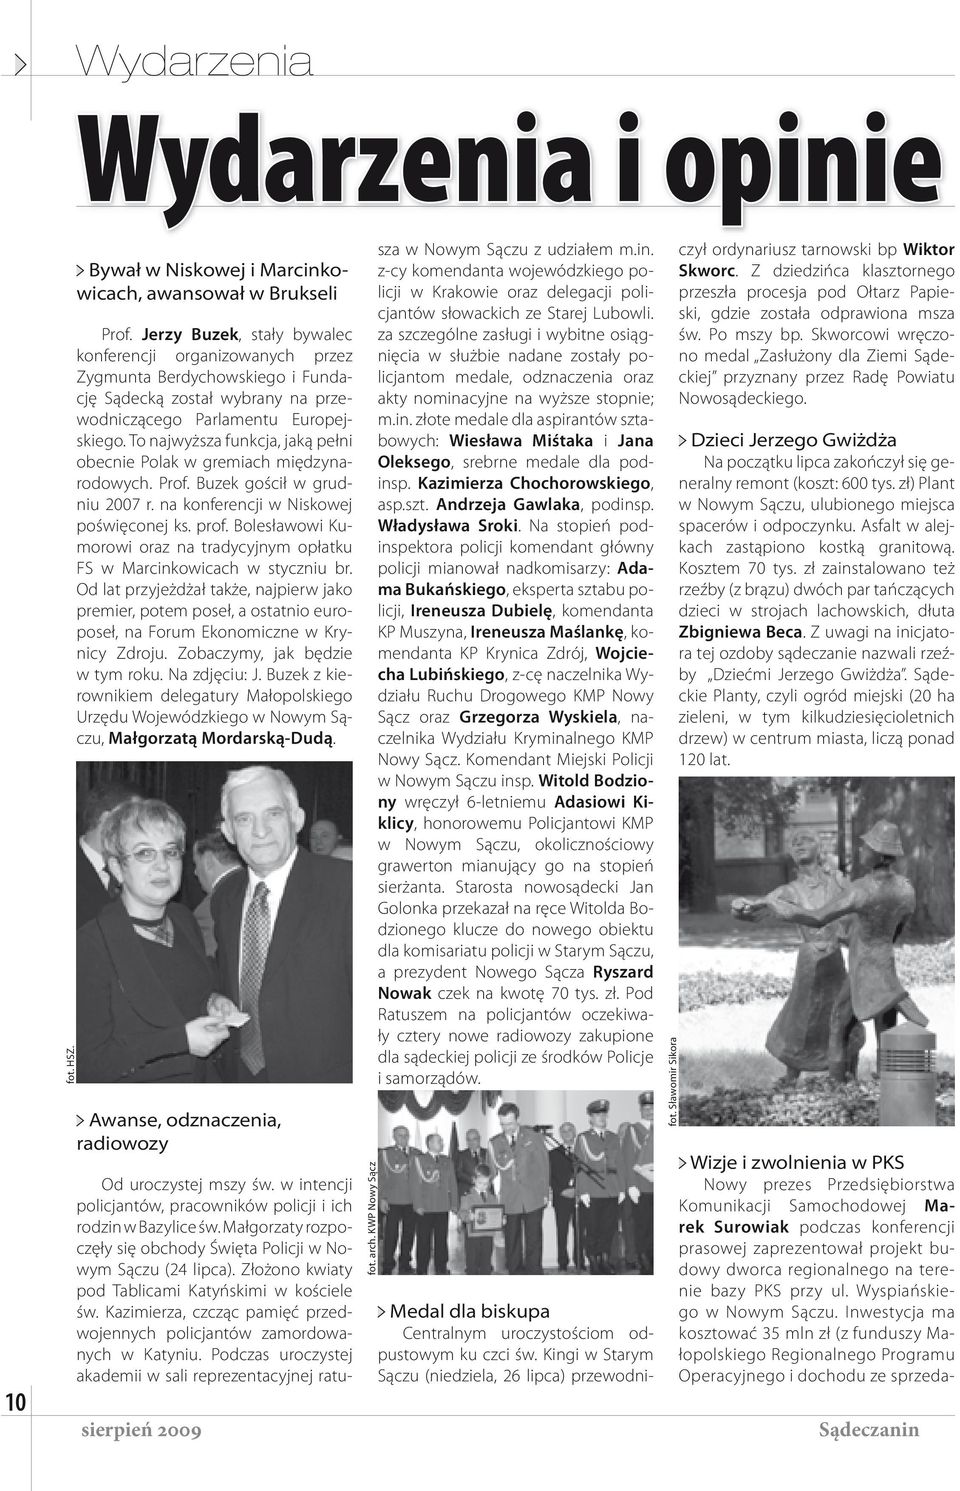 To najwyższa funkcja, jaką pełni obecnie Polak w gremiach międzynarodowych. Prof. Buzek gościł w grudniu 2007 r. na konferencji w Niskowej poświęconej ks. prof.